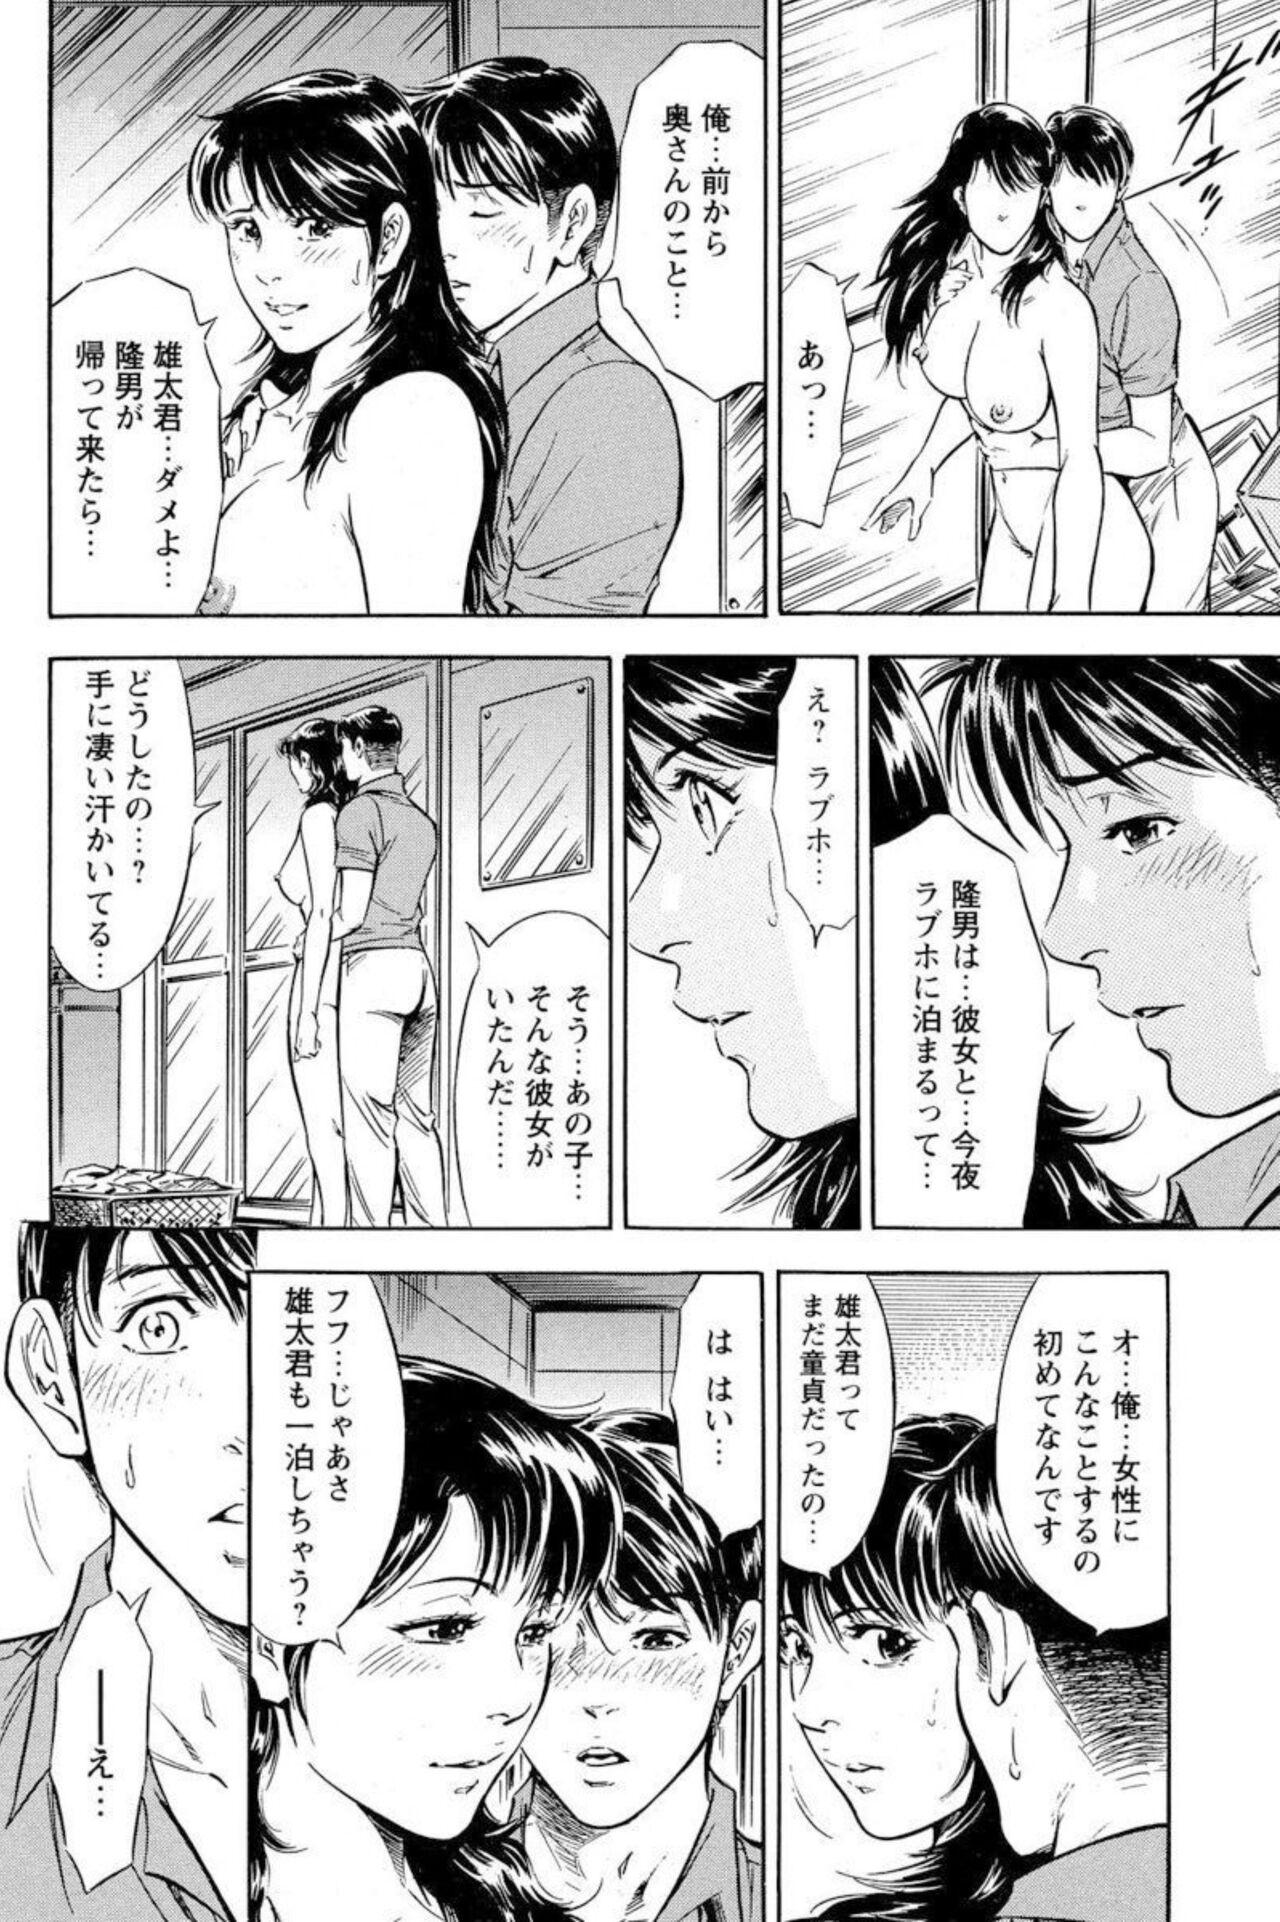 Bear Yūjin no Haha ni Yukkuri Dashi re 【 Bunsatsuban 】1 Creampies - Page 10